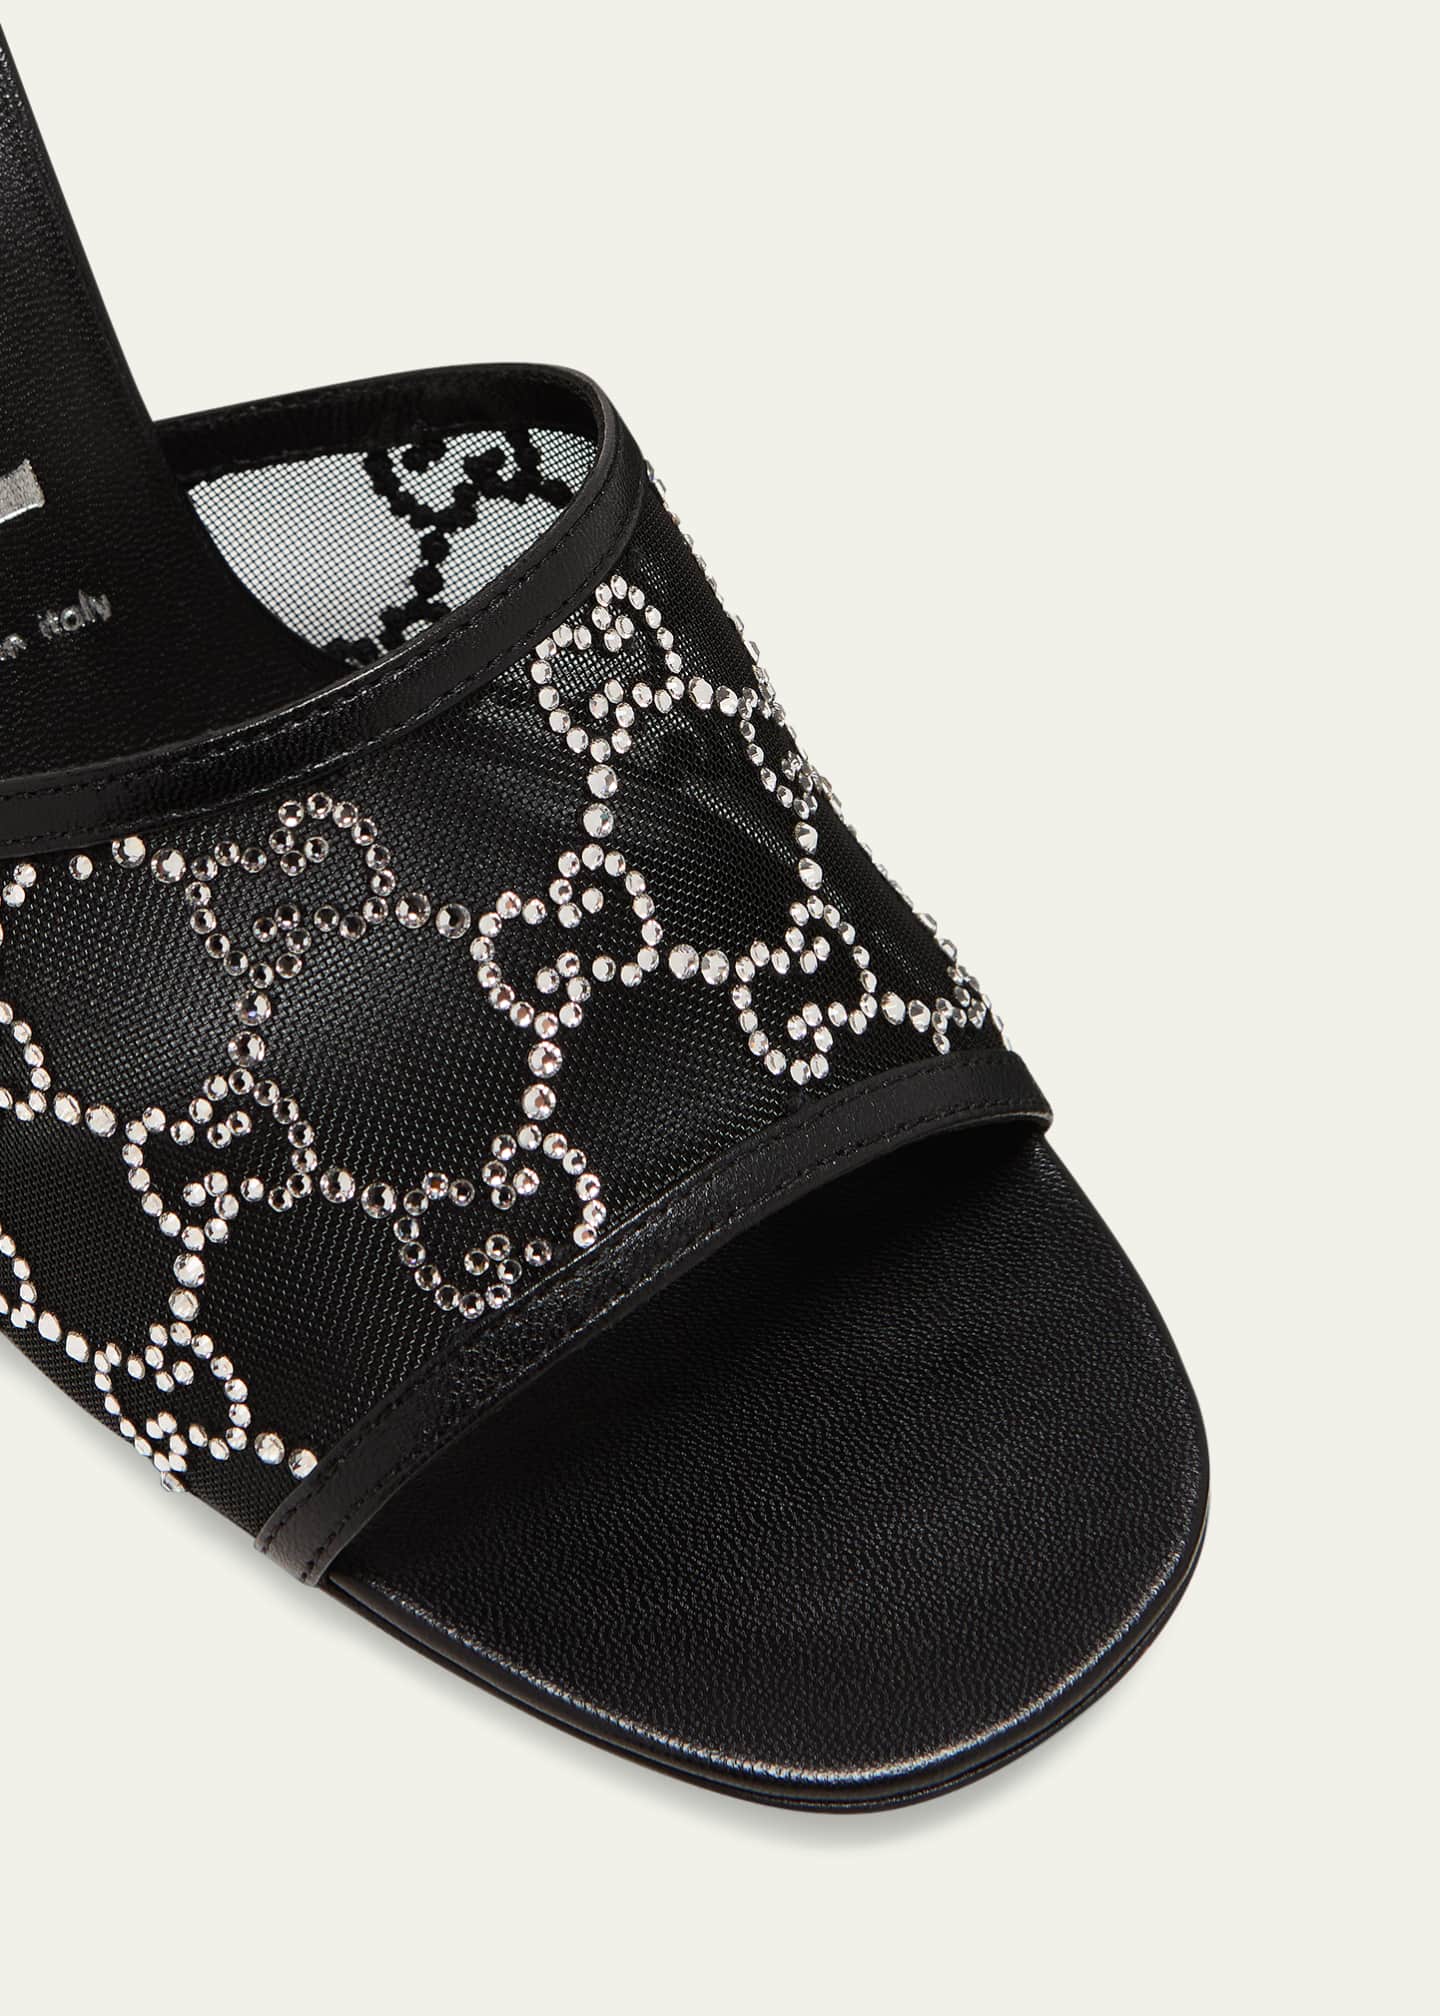 Gucci Demi Rhinestone Mesh Mule Sandals - Bergdorf Goodman